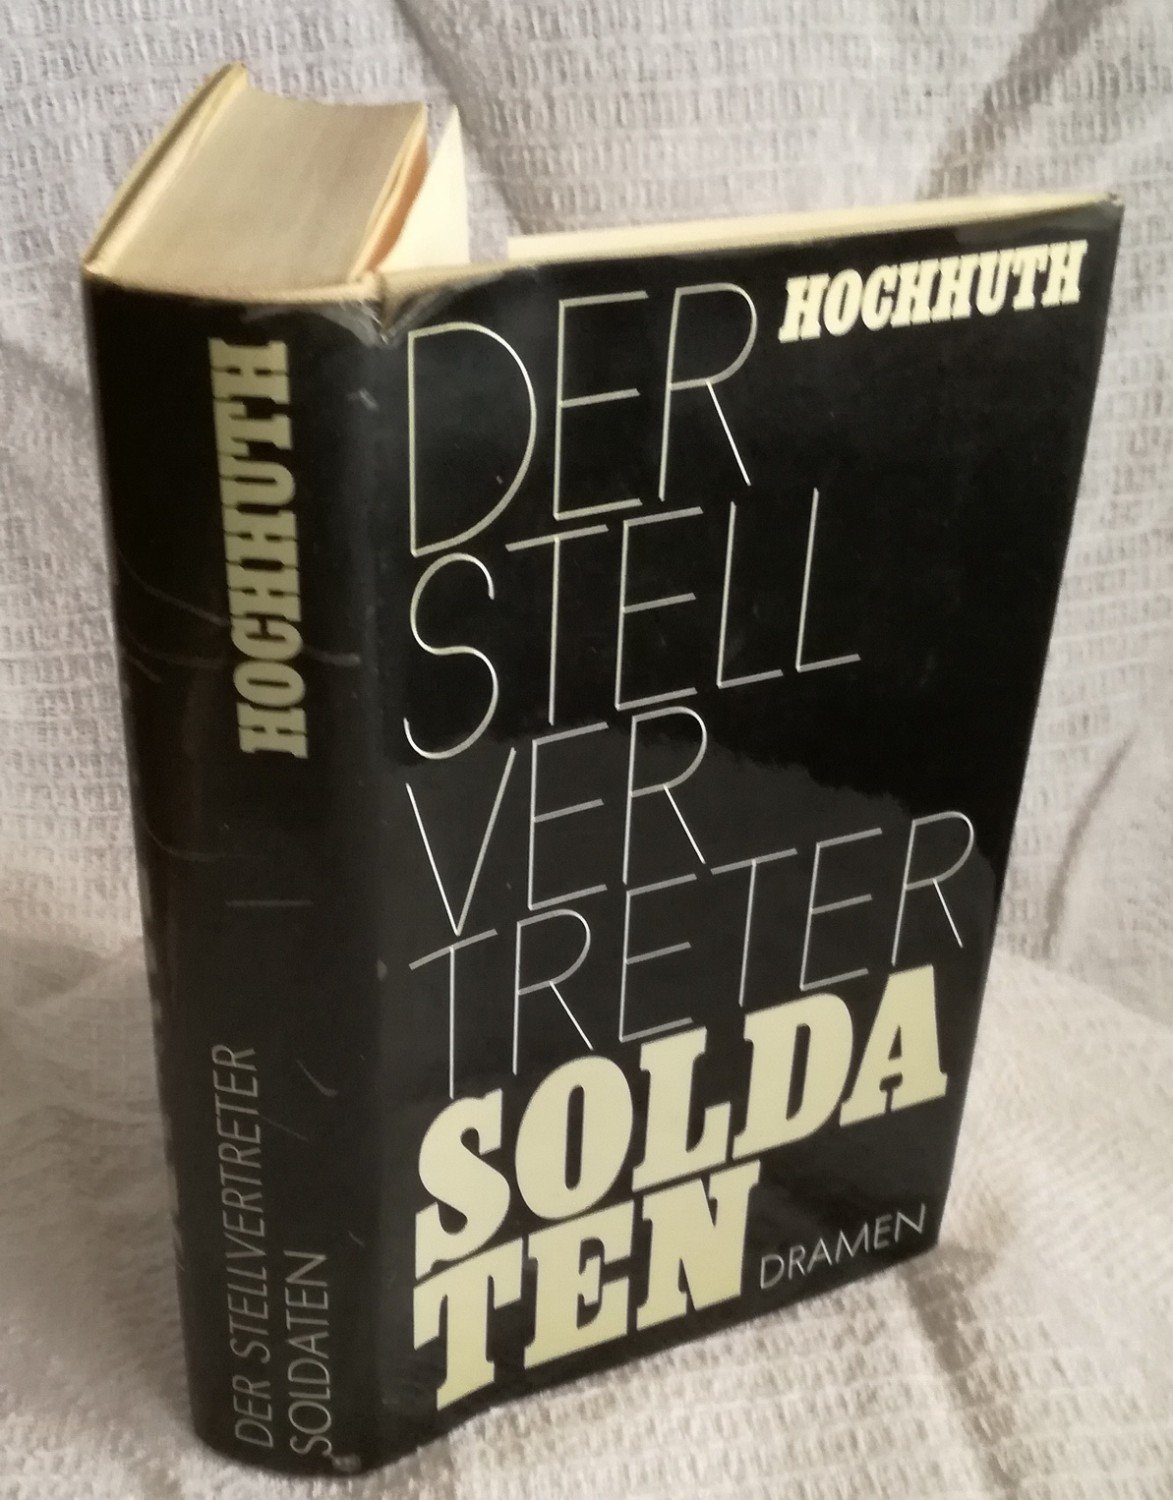 Der Stellvertreter Soldaten Dramen Rolf Hochhuth Buch Antiquarisch Kaufen A01o68fj01zzk